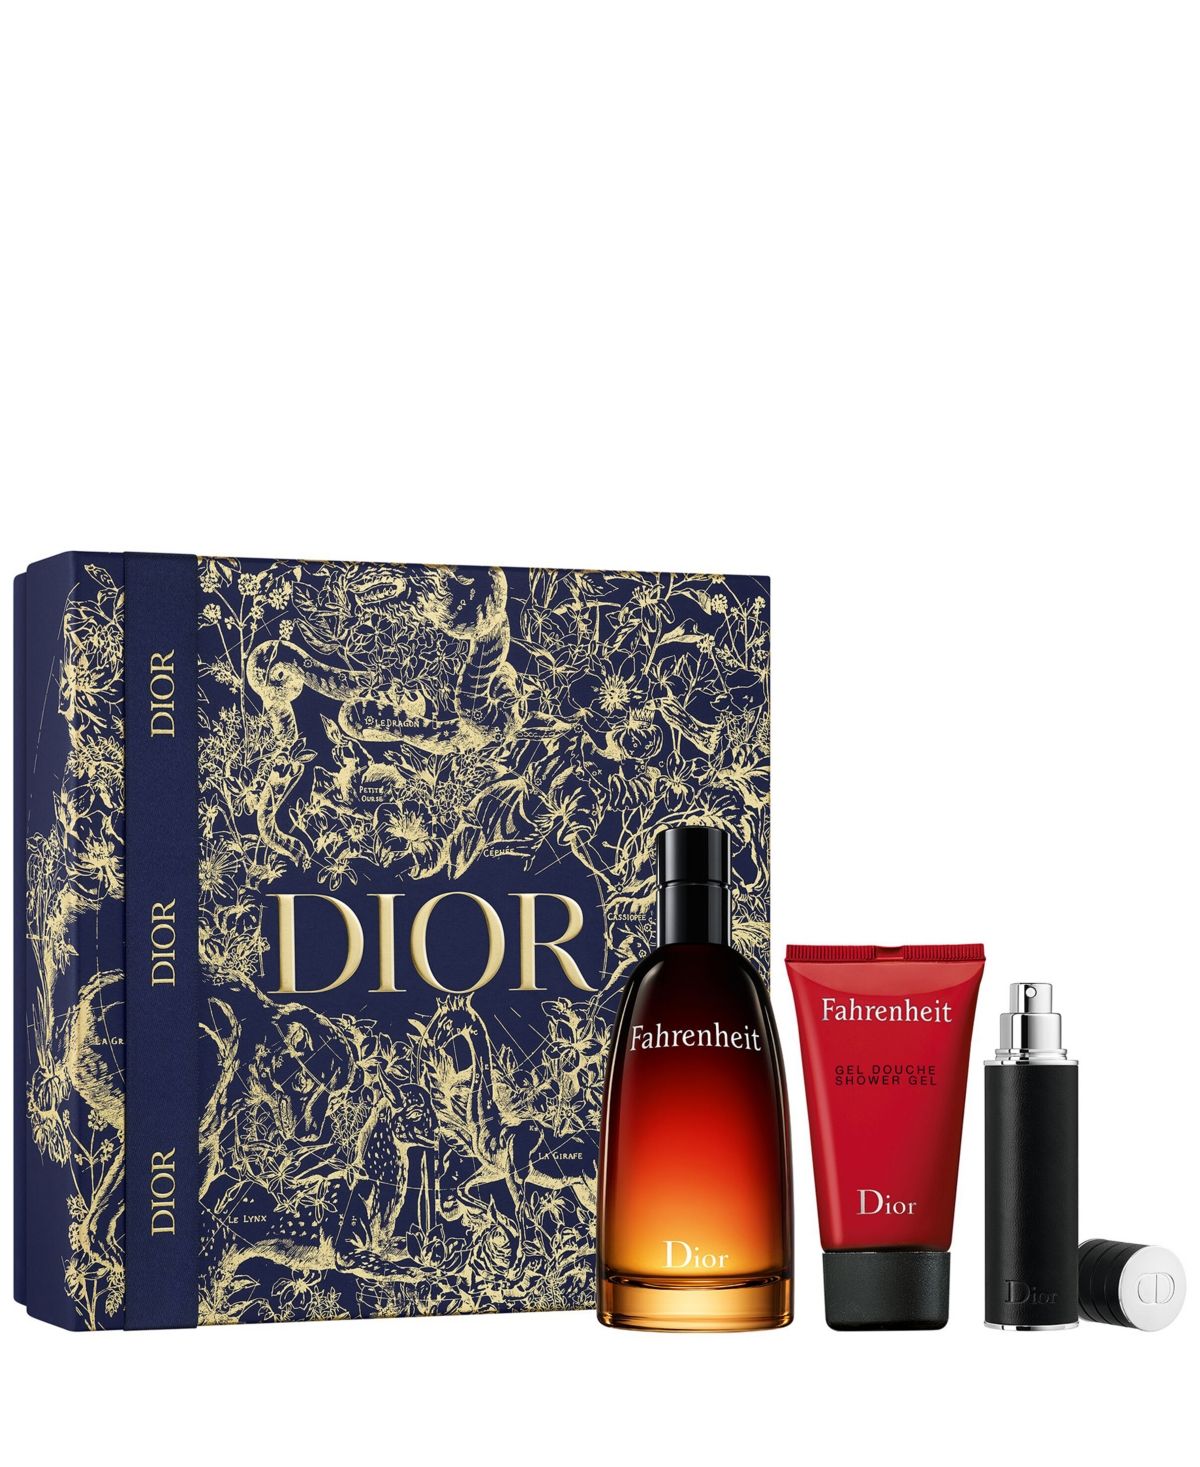 Dior Men's 3-Pc. Fahrenheit Eau de Toilette Limited-Edition Gift Set | Macys (US)